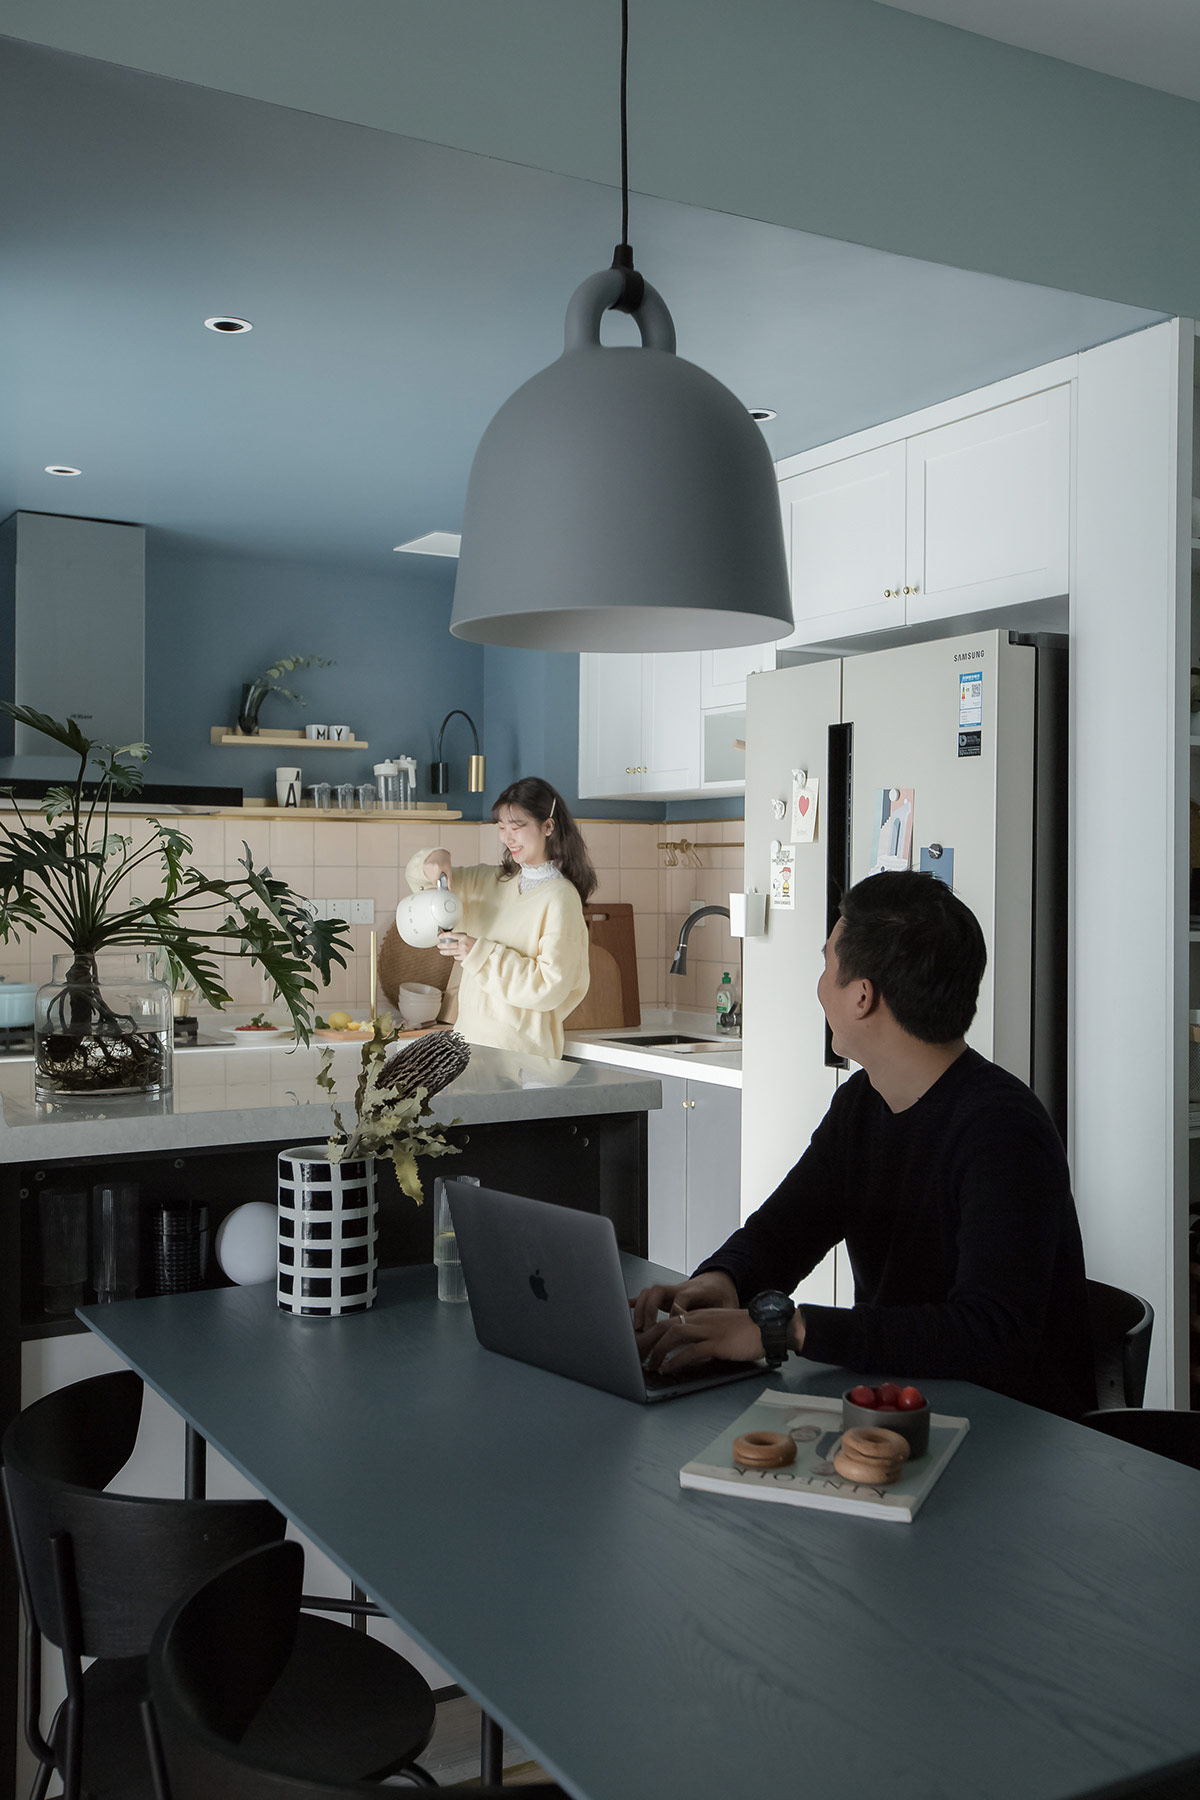 Nhà bếp và phòng ăn được thiết kế thành một không gian mở, cho phép hai vợ chồng trò chuyện với nhau thoải mái hơn trong khi làm các công việc cá nhân.